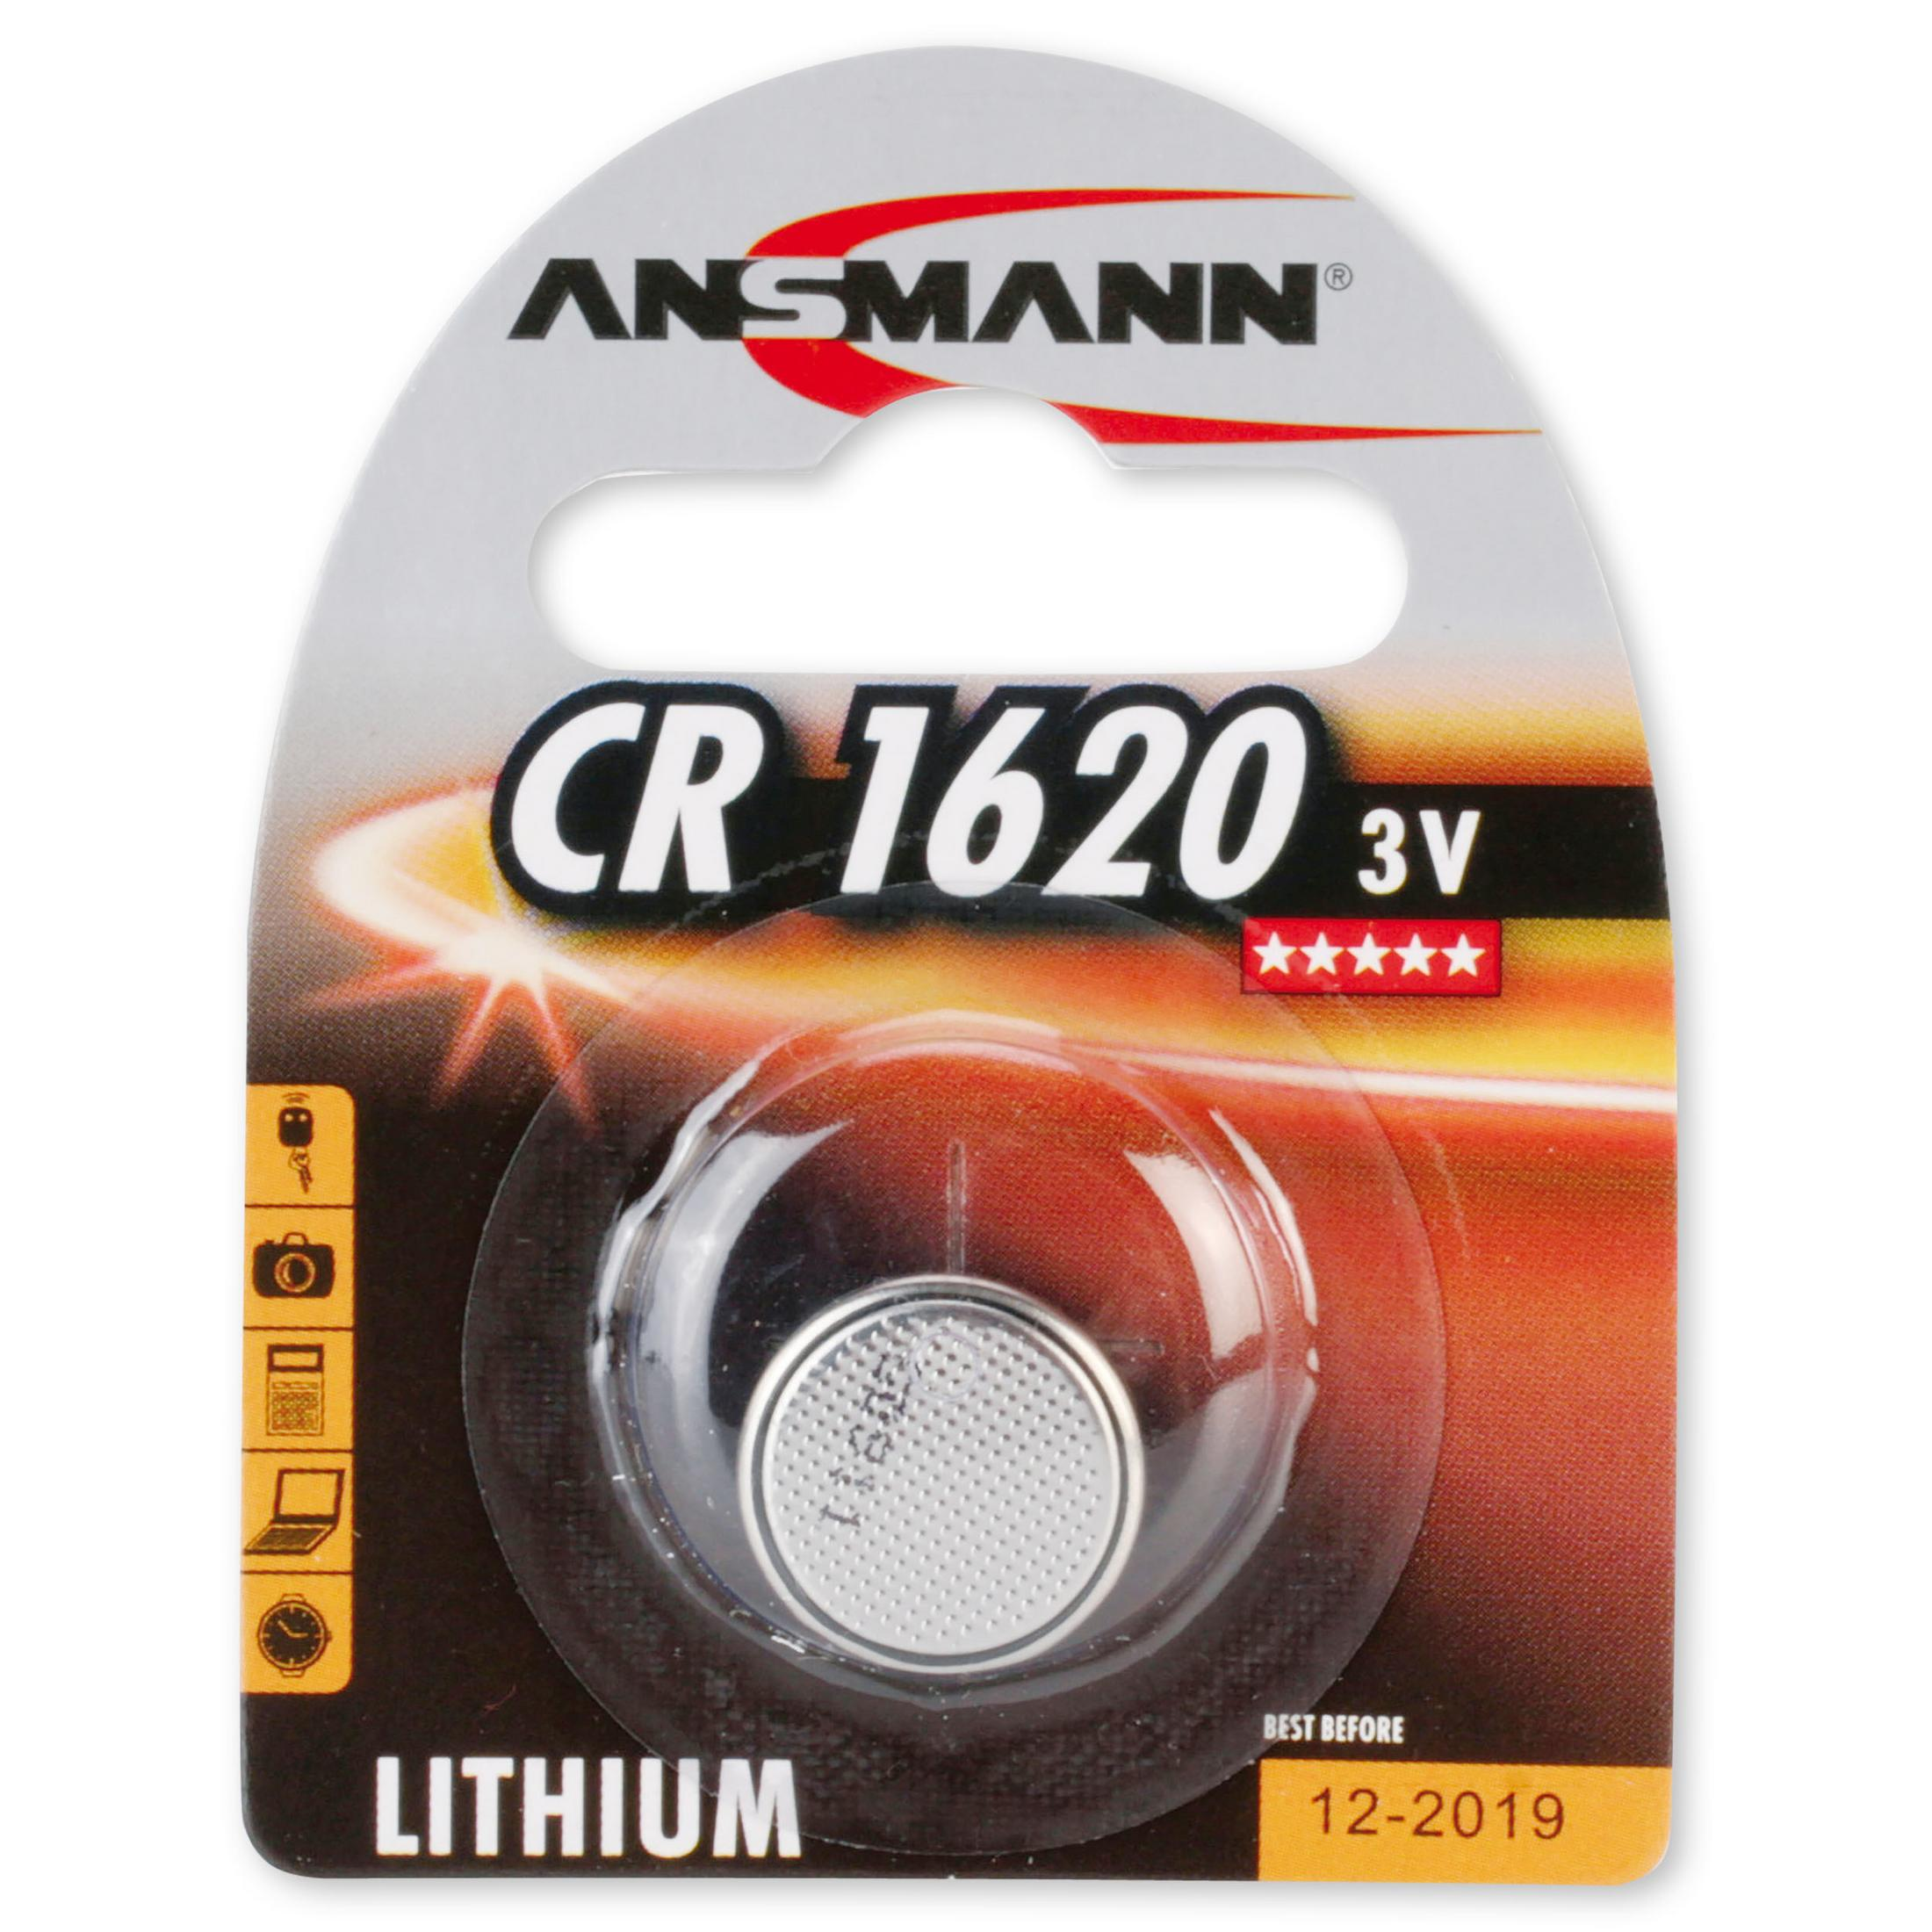 Lithium Knopfzelle 1 Strom Knopfzellen Lithium, 5020072 Knopfzellen, Stück ANSMANN Licht Energie / 3 / CR1620 ANSMANN 3V Volt